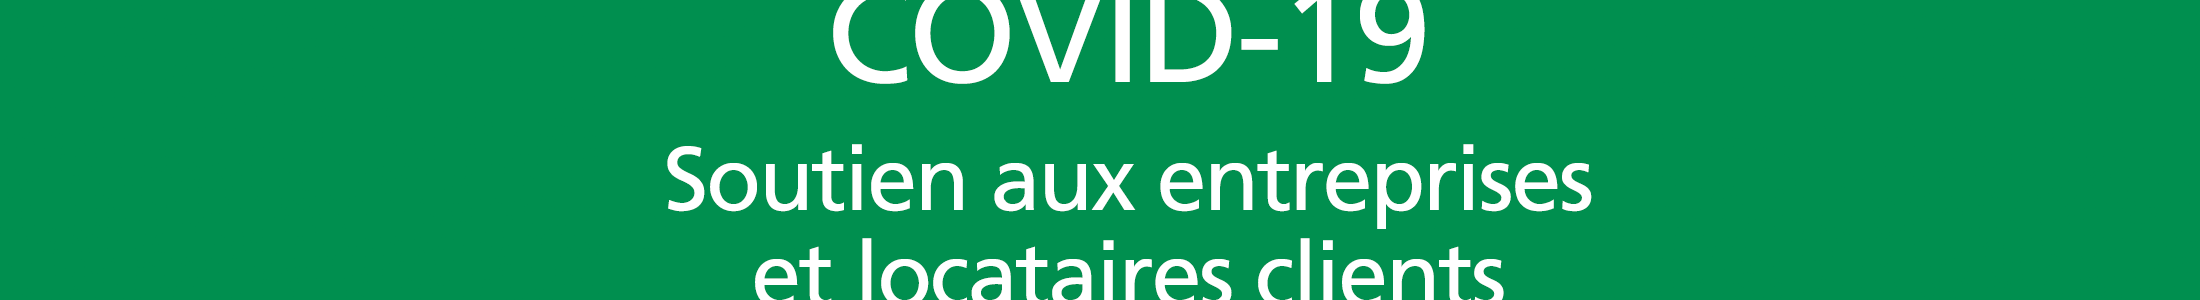 COVID-19 : dispositif de soutien destiné aux entreprises et locataires clients